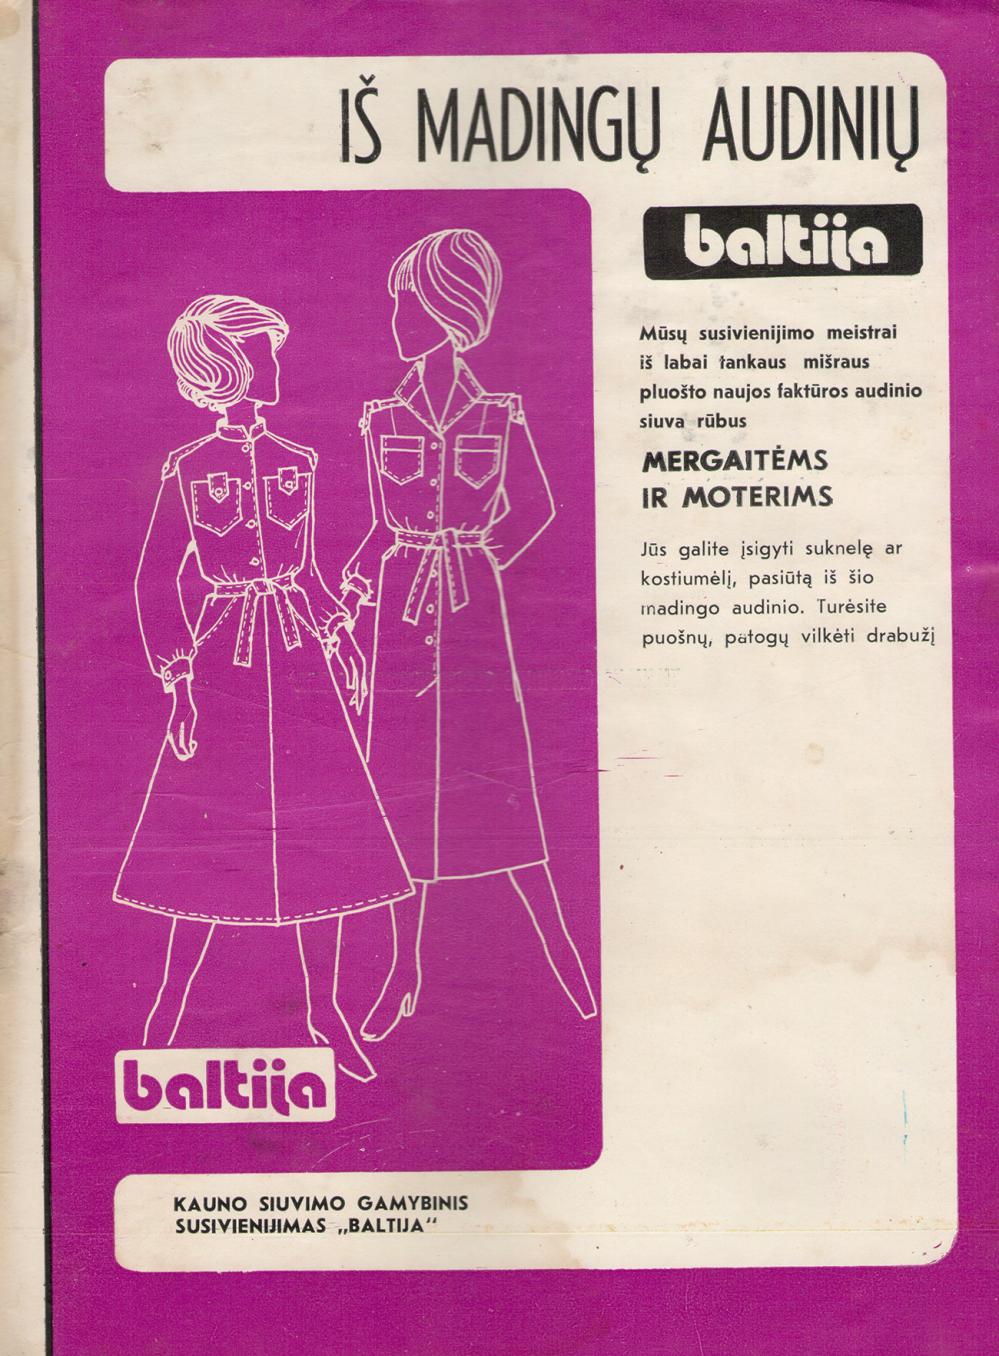 Kauno siuvimo gamybinis susivienijimas „Baltija“ / Rūbai mergaitėms ir moterims